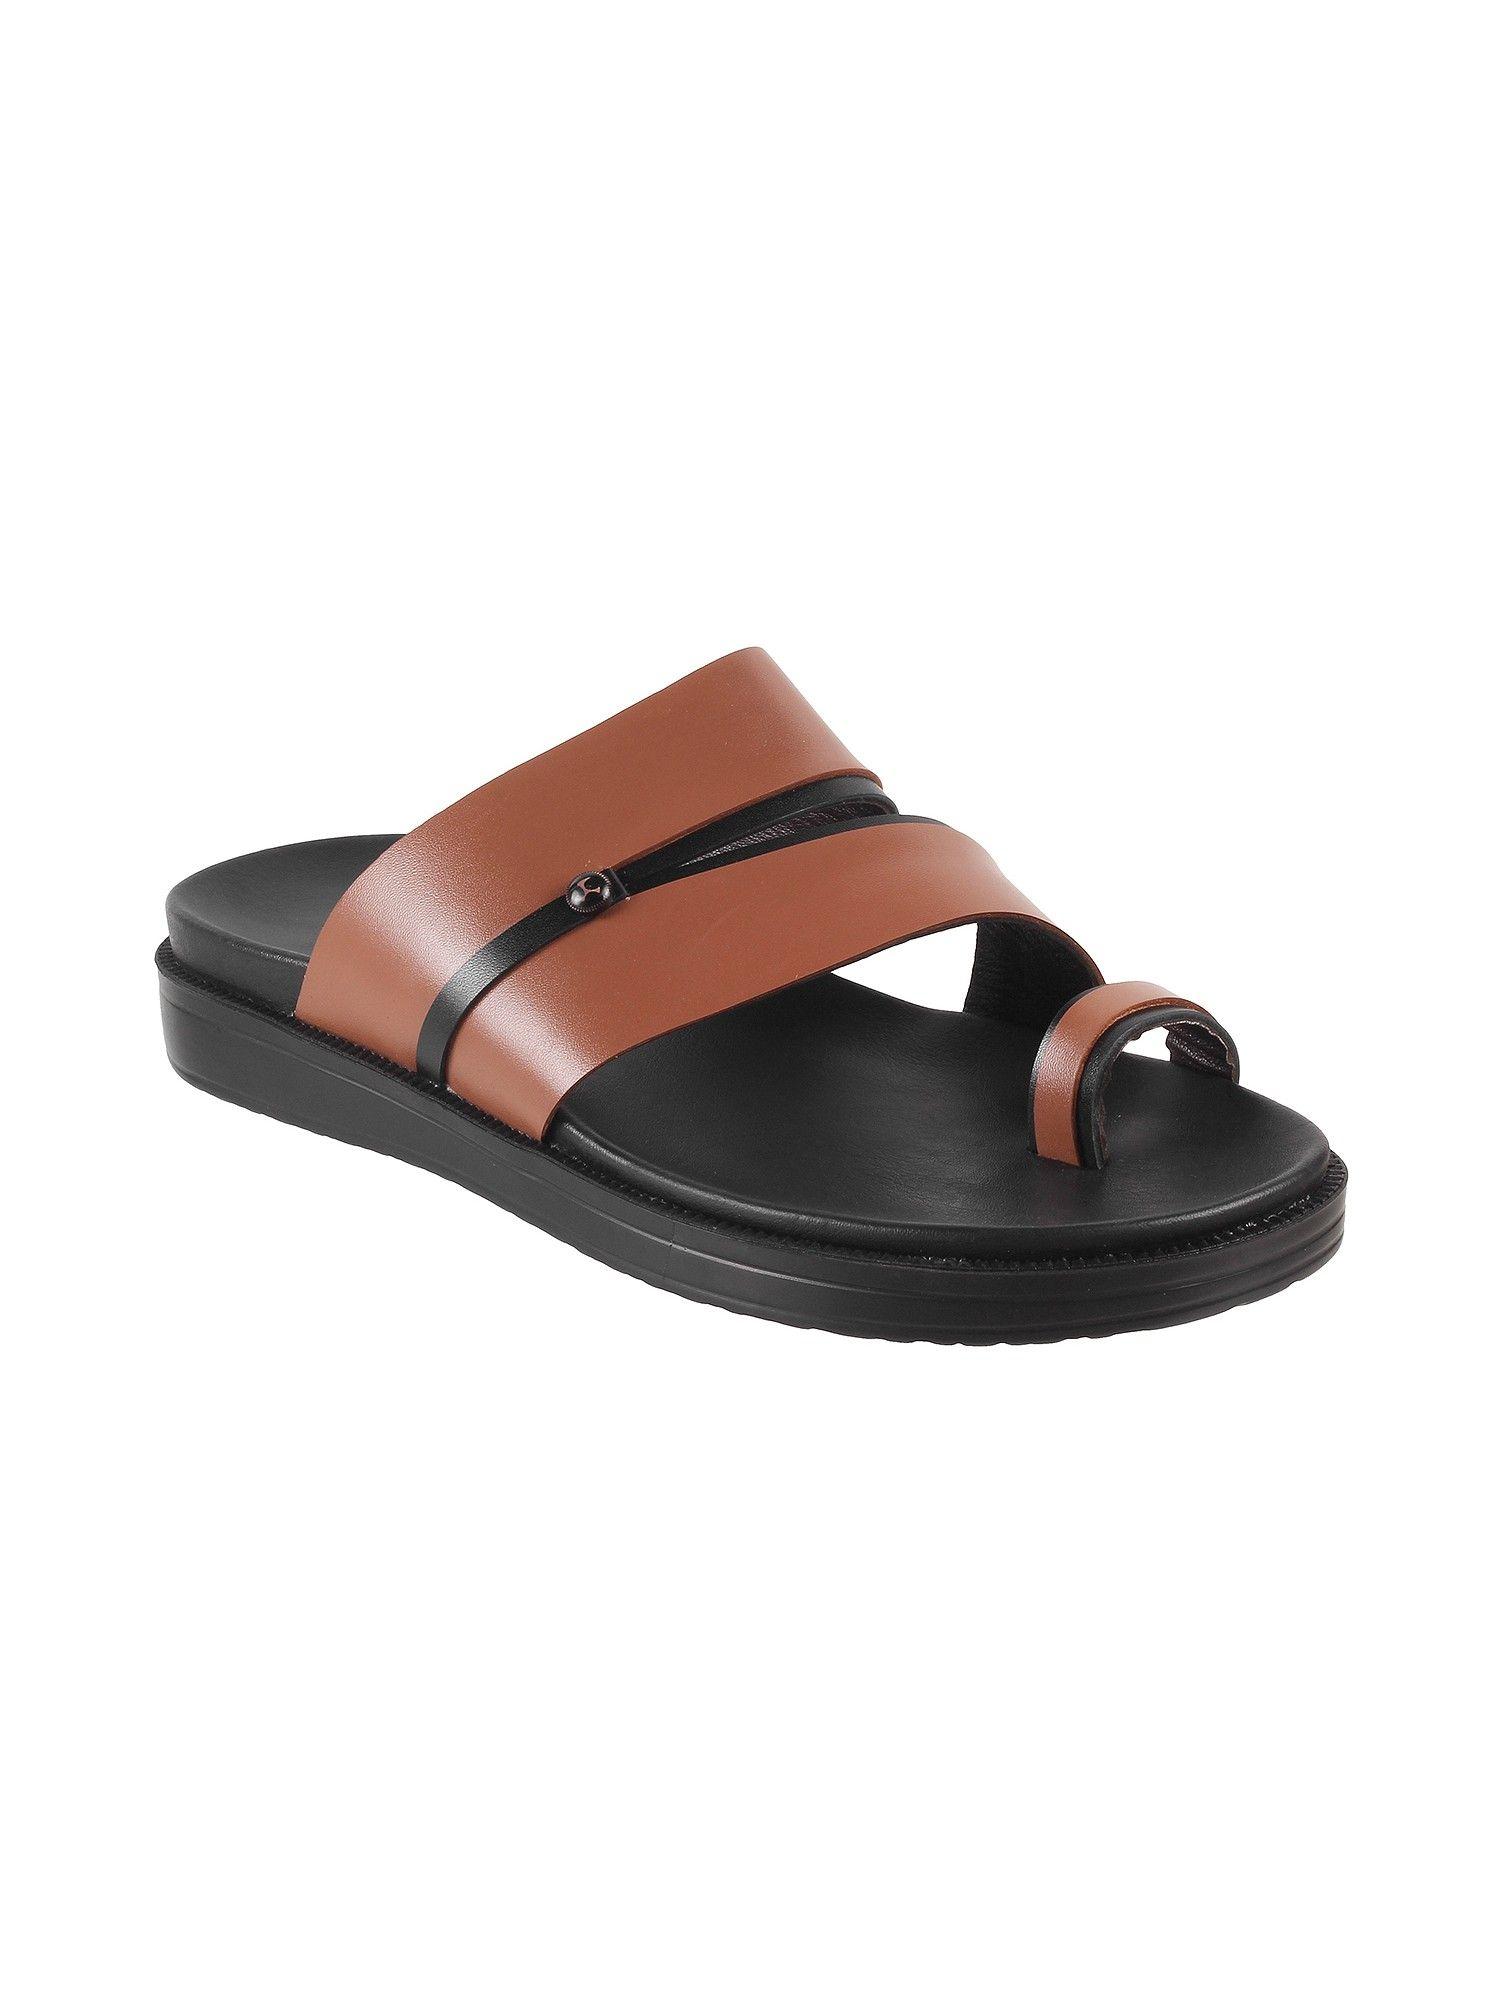 mens-tan-flat-chappalsmochi-mens-tan-synthetic-solid-plain-sandals